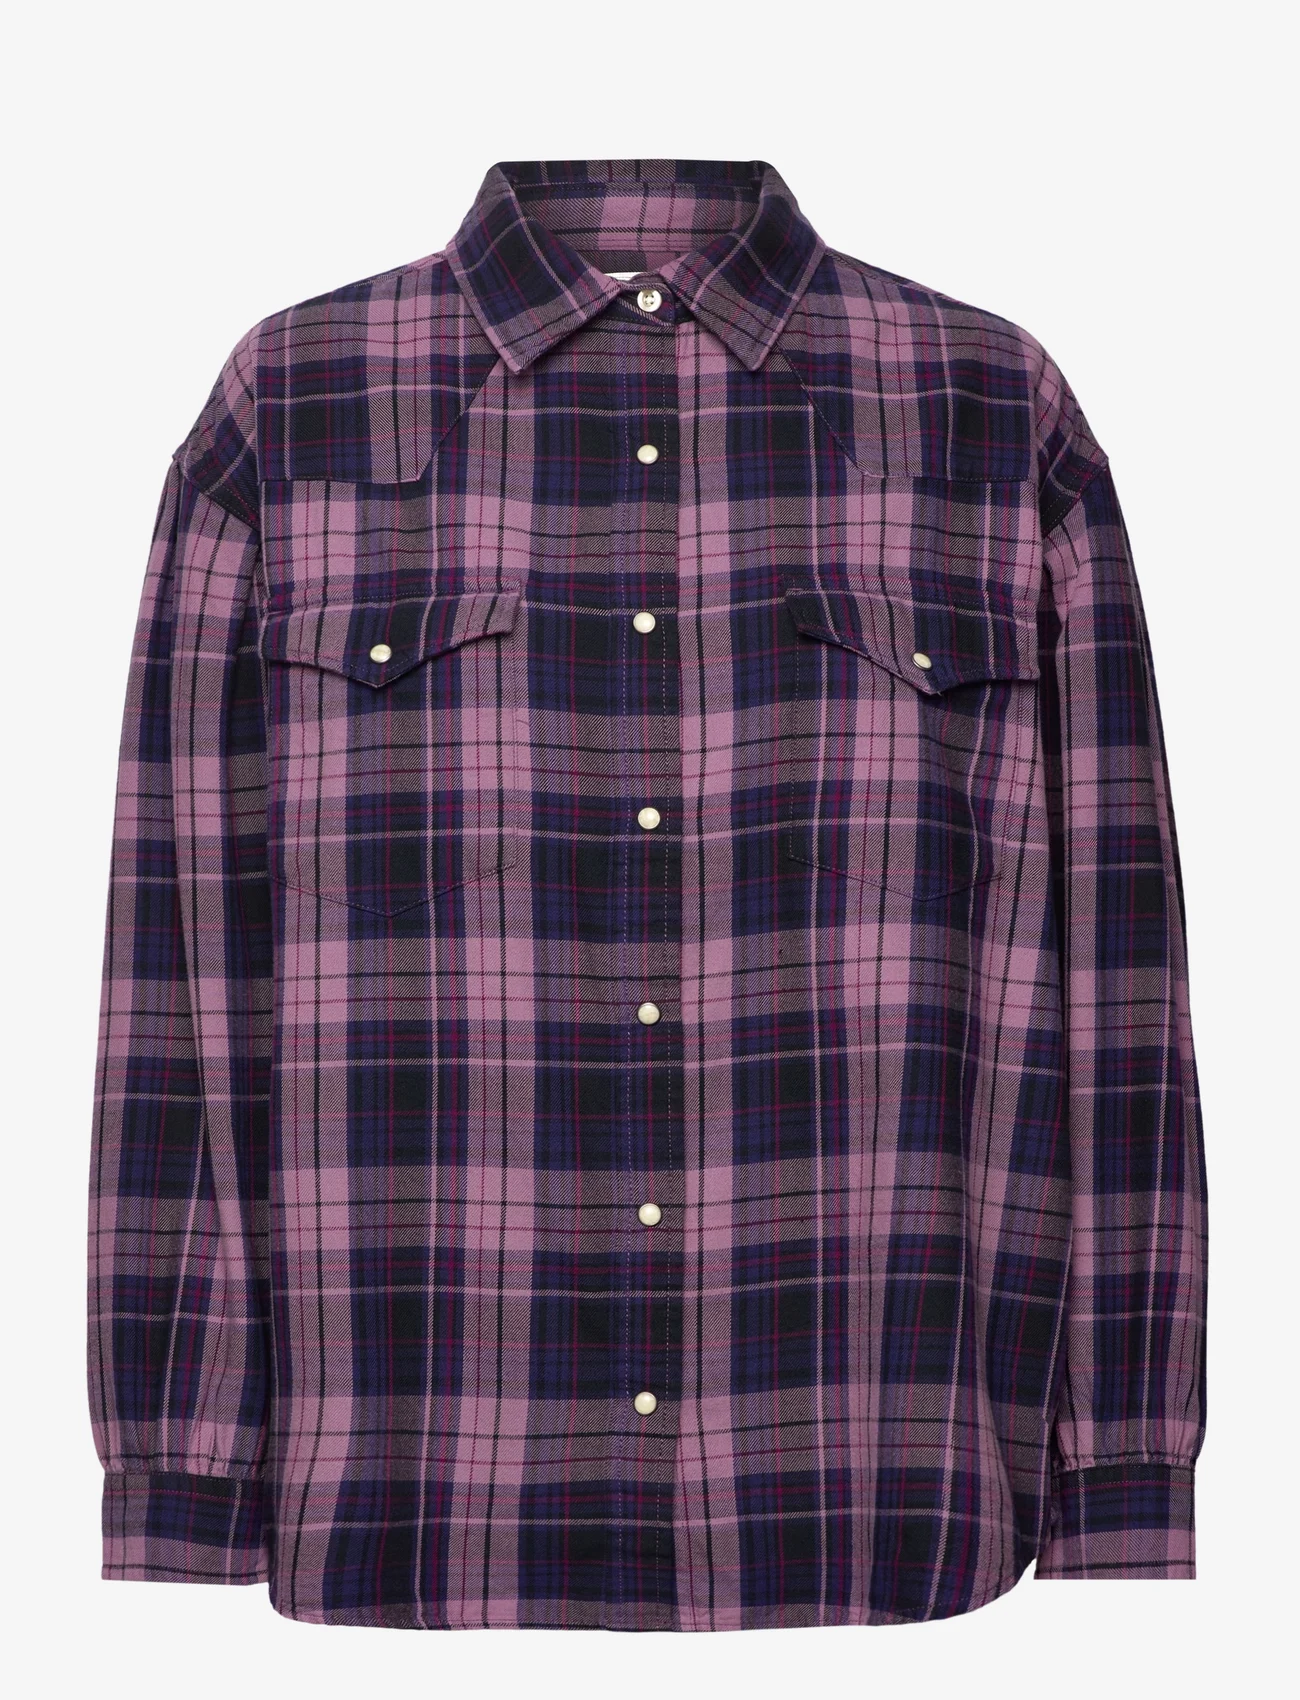 Lee Jeans - SEASONAL WESTERN SHIRT - overhemden met lange mouwen - blueberry - 0